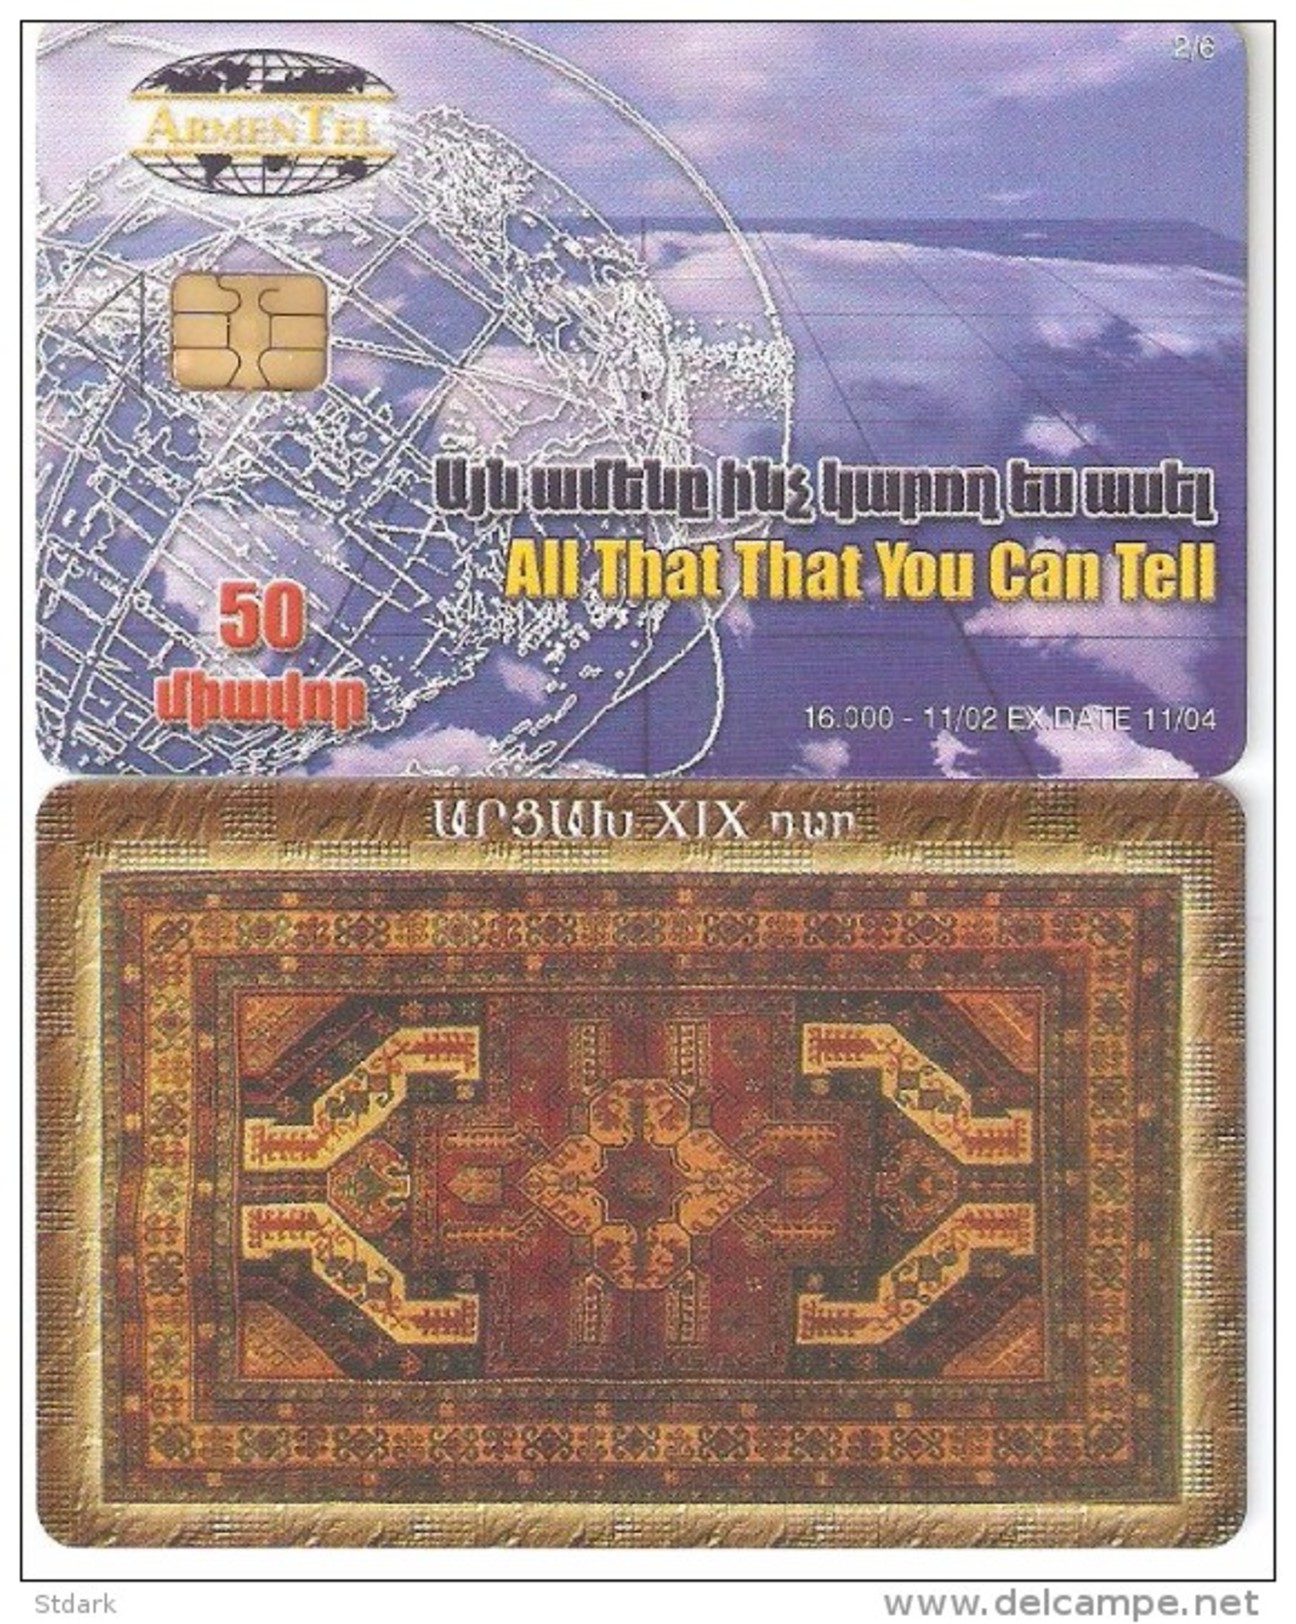 Armenia-Carpet, DUMMY CARD(no Code) - Armenia